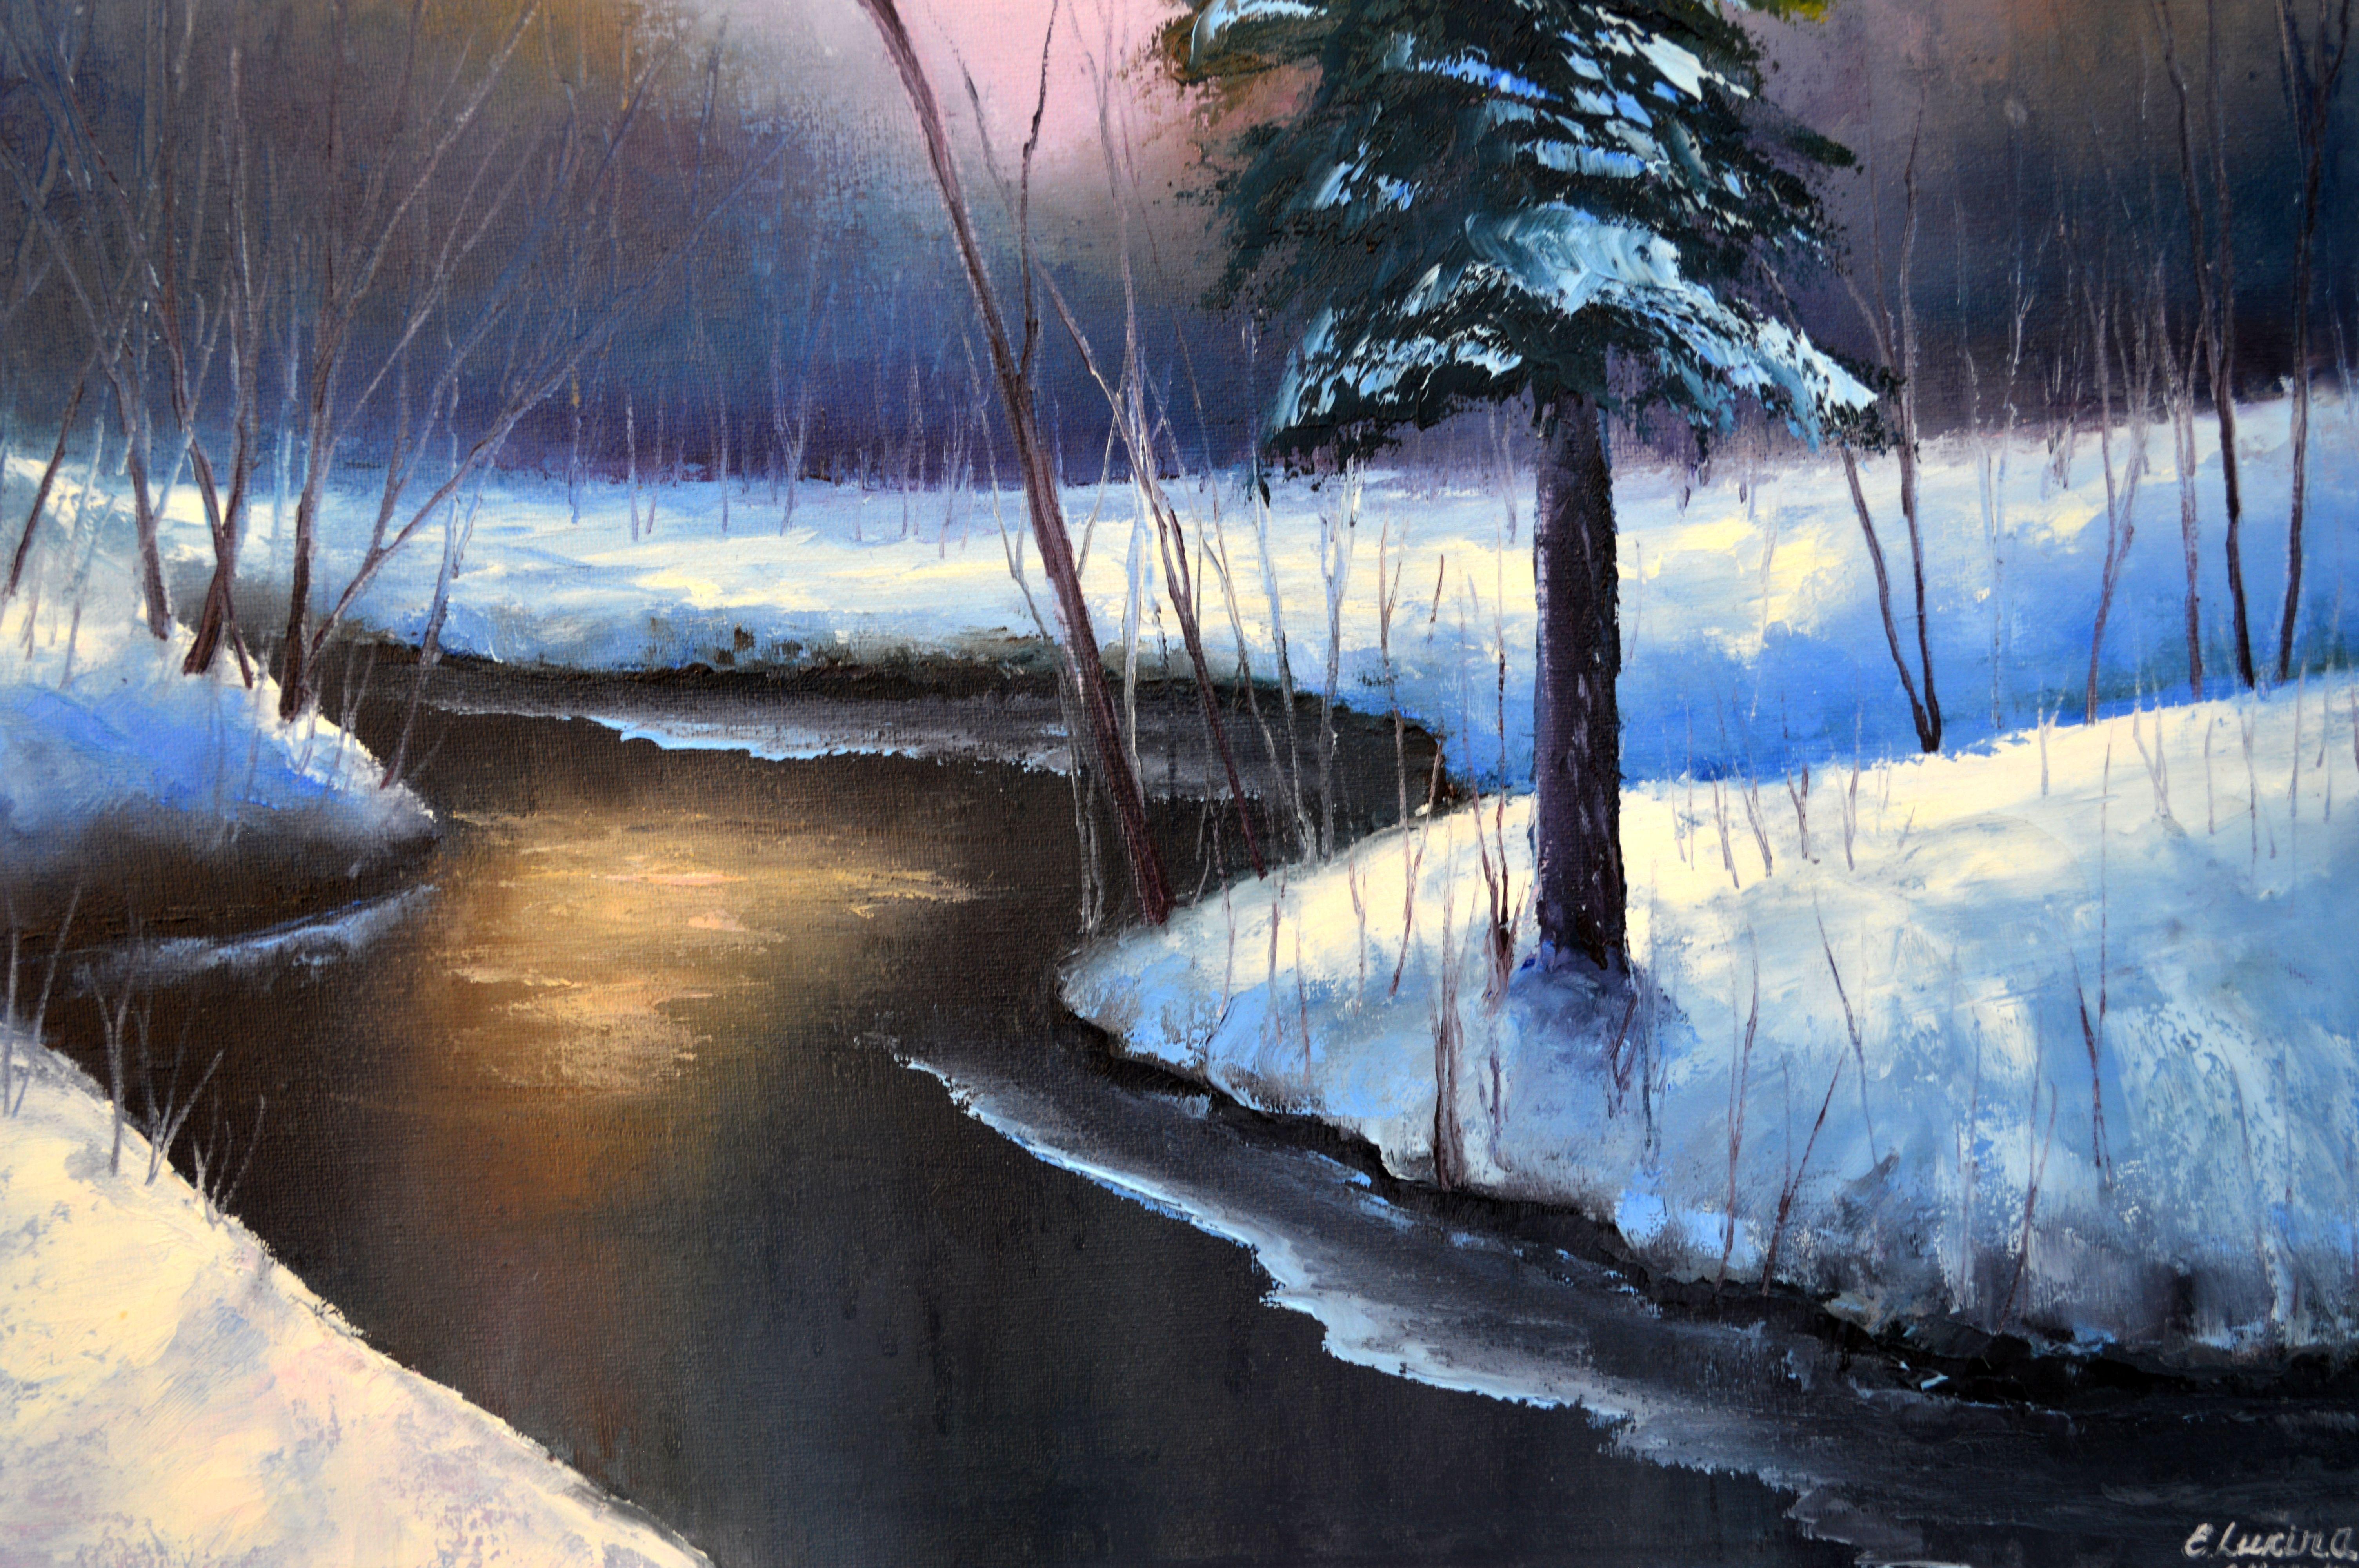 Mit diesem Gemälde wollte ich die heitere Umarmung des Winters einfangen, wenn die Stille des Schnees die Erde bedeckt. Dieses Werk ist ein Tanz aus kühlen und warmen Farbtönen, die sich ineinander verflechten, um die Ruhe des Schlummers der Natur